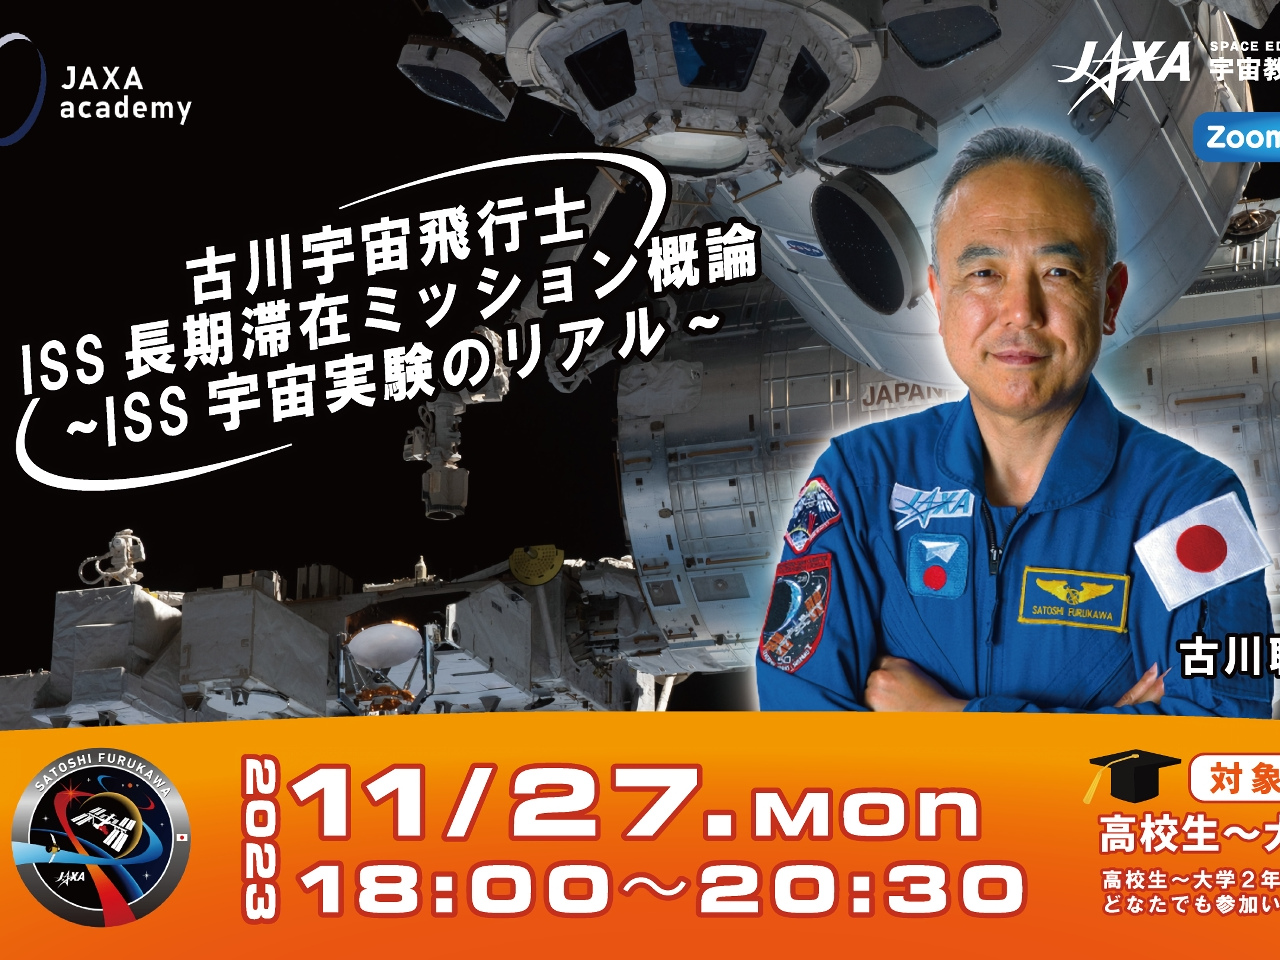 リアルタイムに交信--古川聡宇宙飛行士がISSでの実験を解説するウェビナー開催